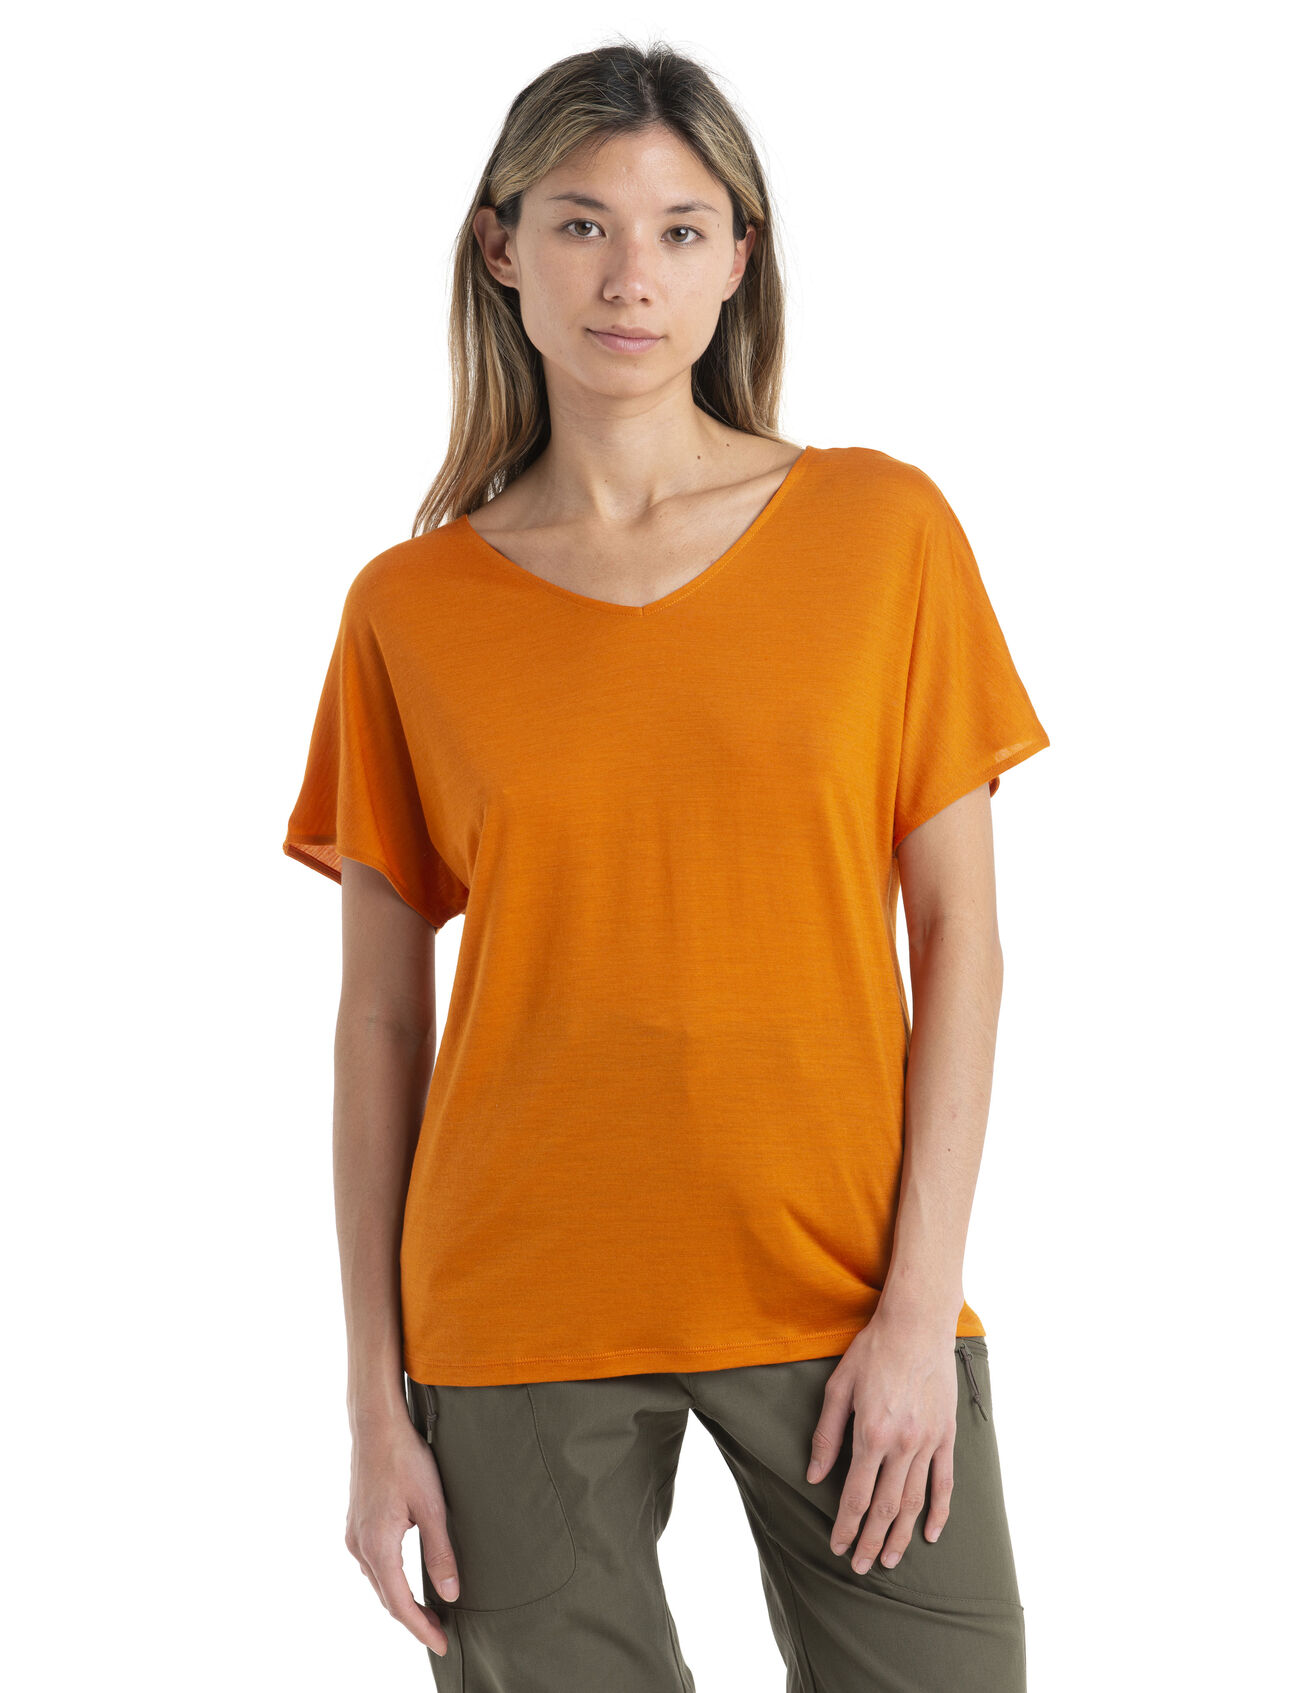 Wendbares Merino Drayden T-Shirt Damen Ein äußerst vielseitiges T-Shirt für jeden Tag aus unserem Cool-Lite™ Jersey, das wendbare Drayden T-Shirt kann als softes V-Shirt oder umgekehrt als hohes Rundhals-Shirt getragen werden.